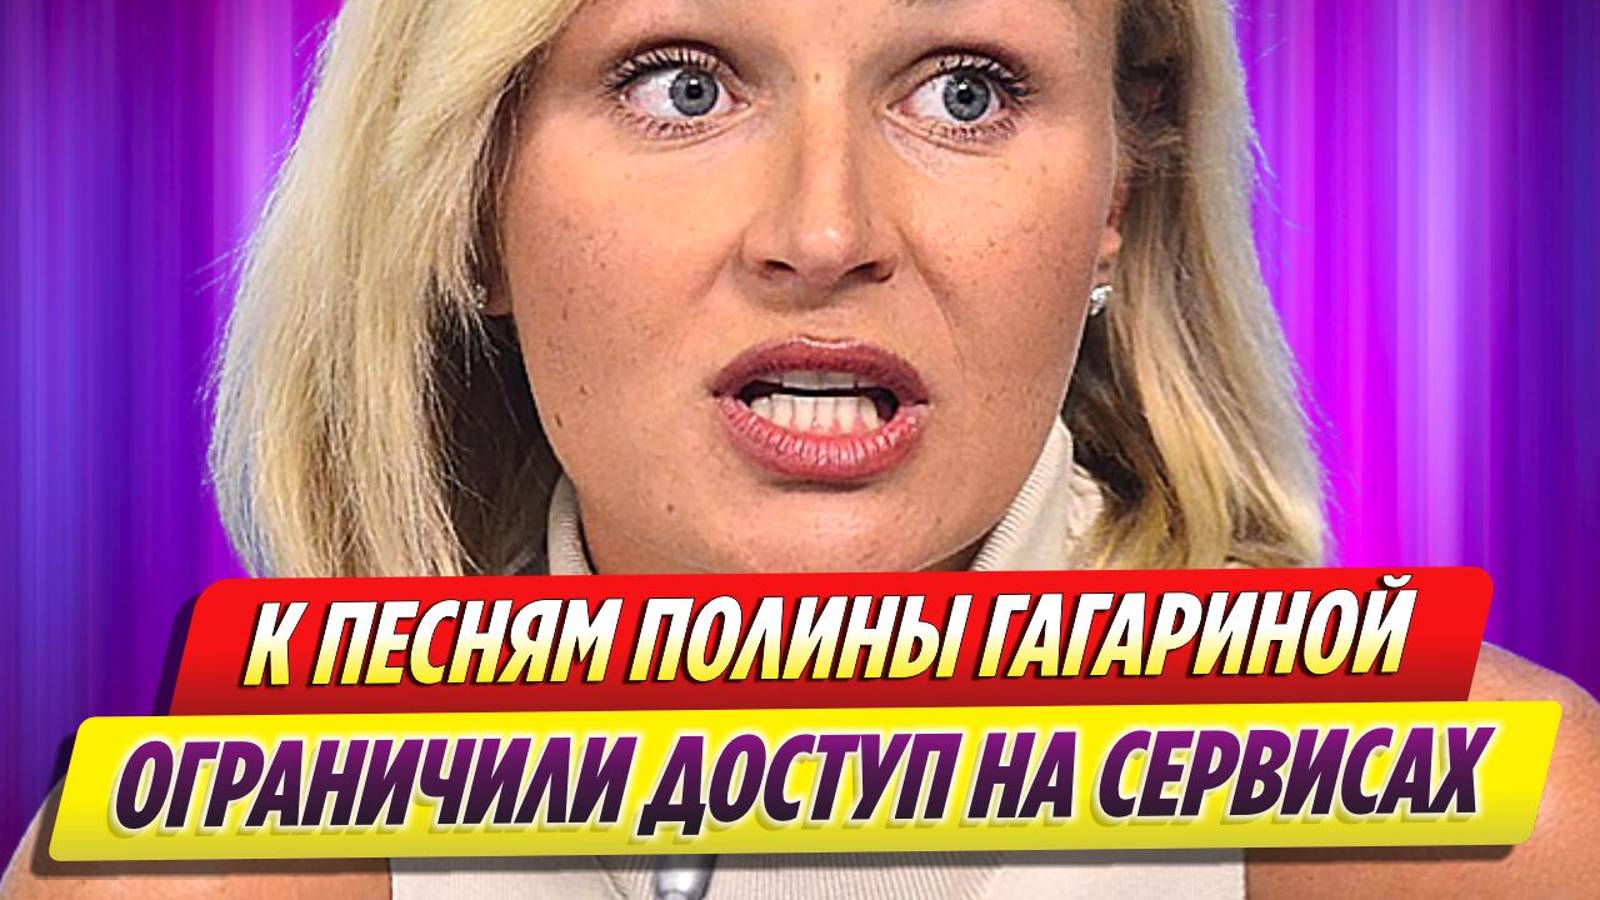 Полине Гагариной ограниченили доступ к своим песням на музыкальных сервисах